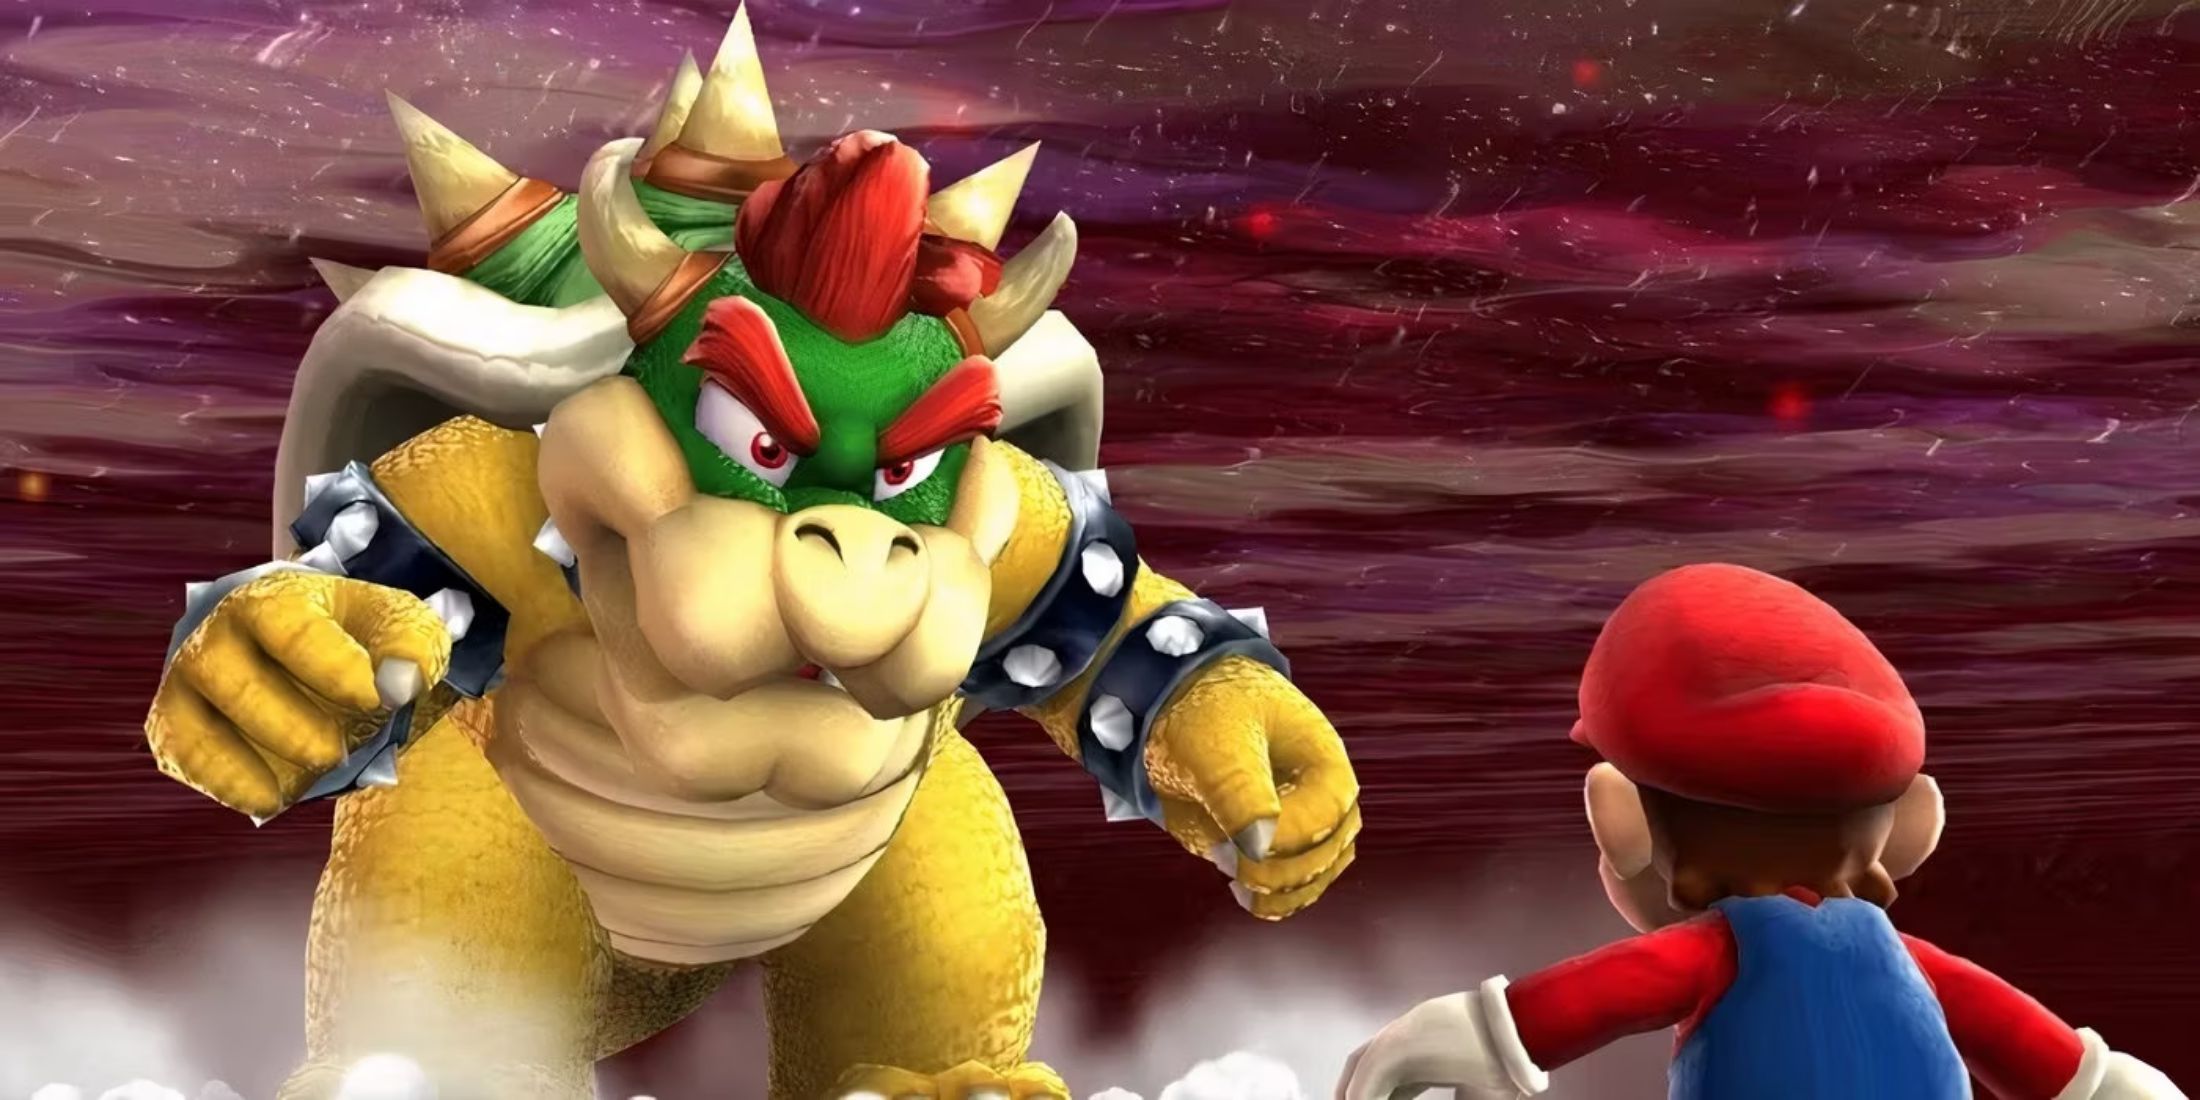 Bowser and Mario facing off in Super Mario Galaxy